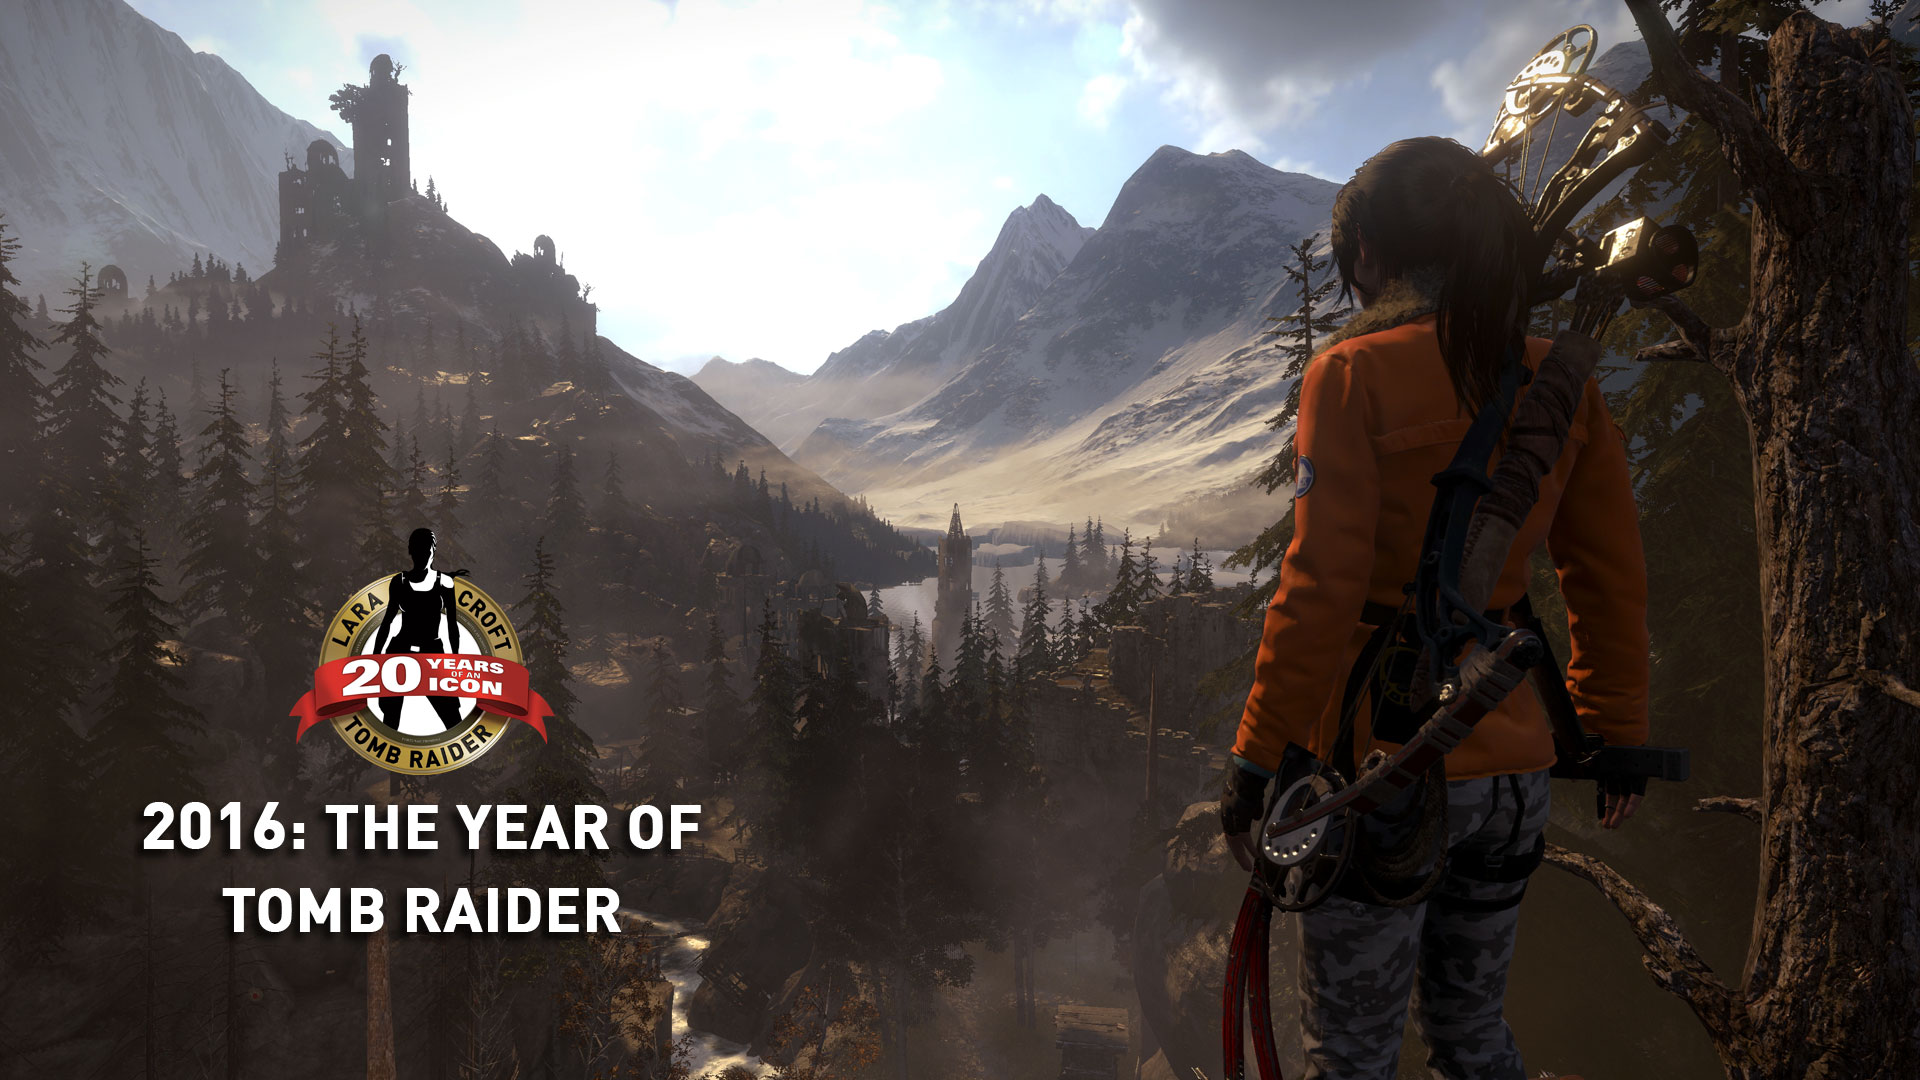 Repaso visual a las celebraciones por el 20º aniversario de Tomb Raider